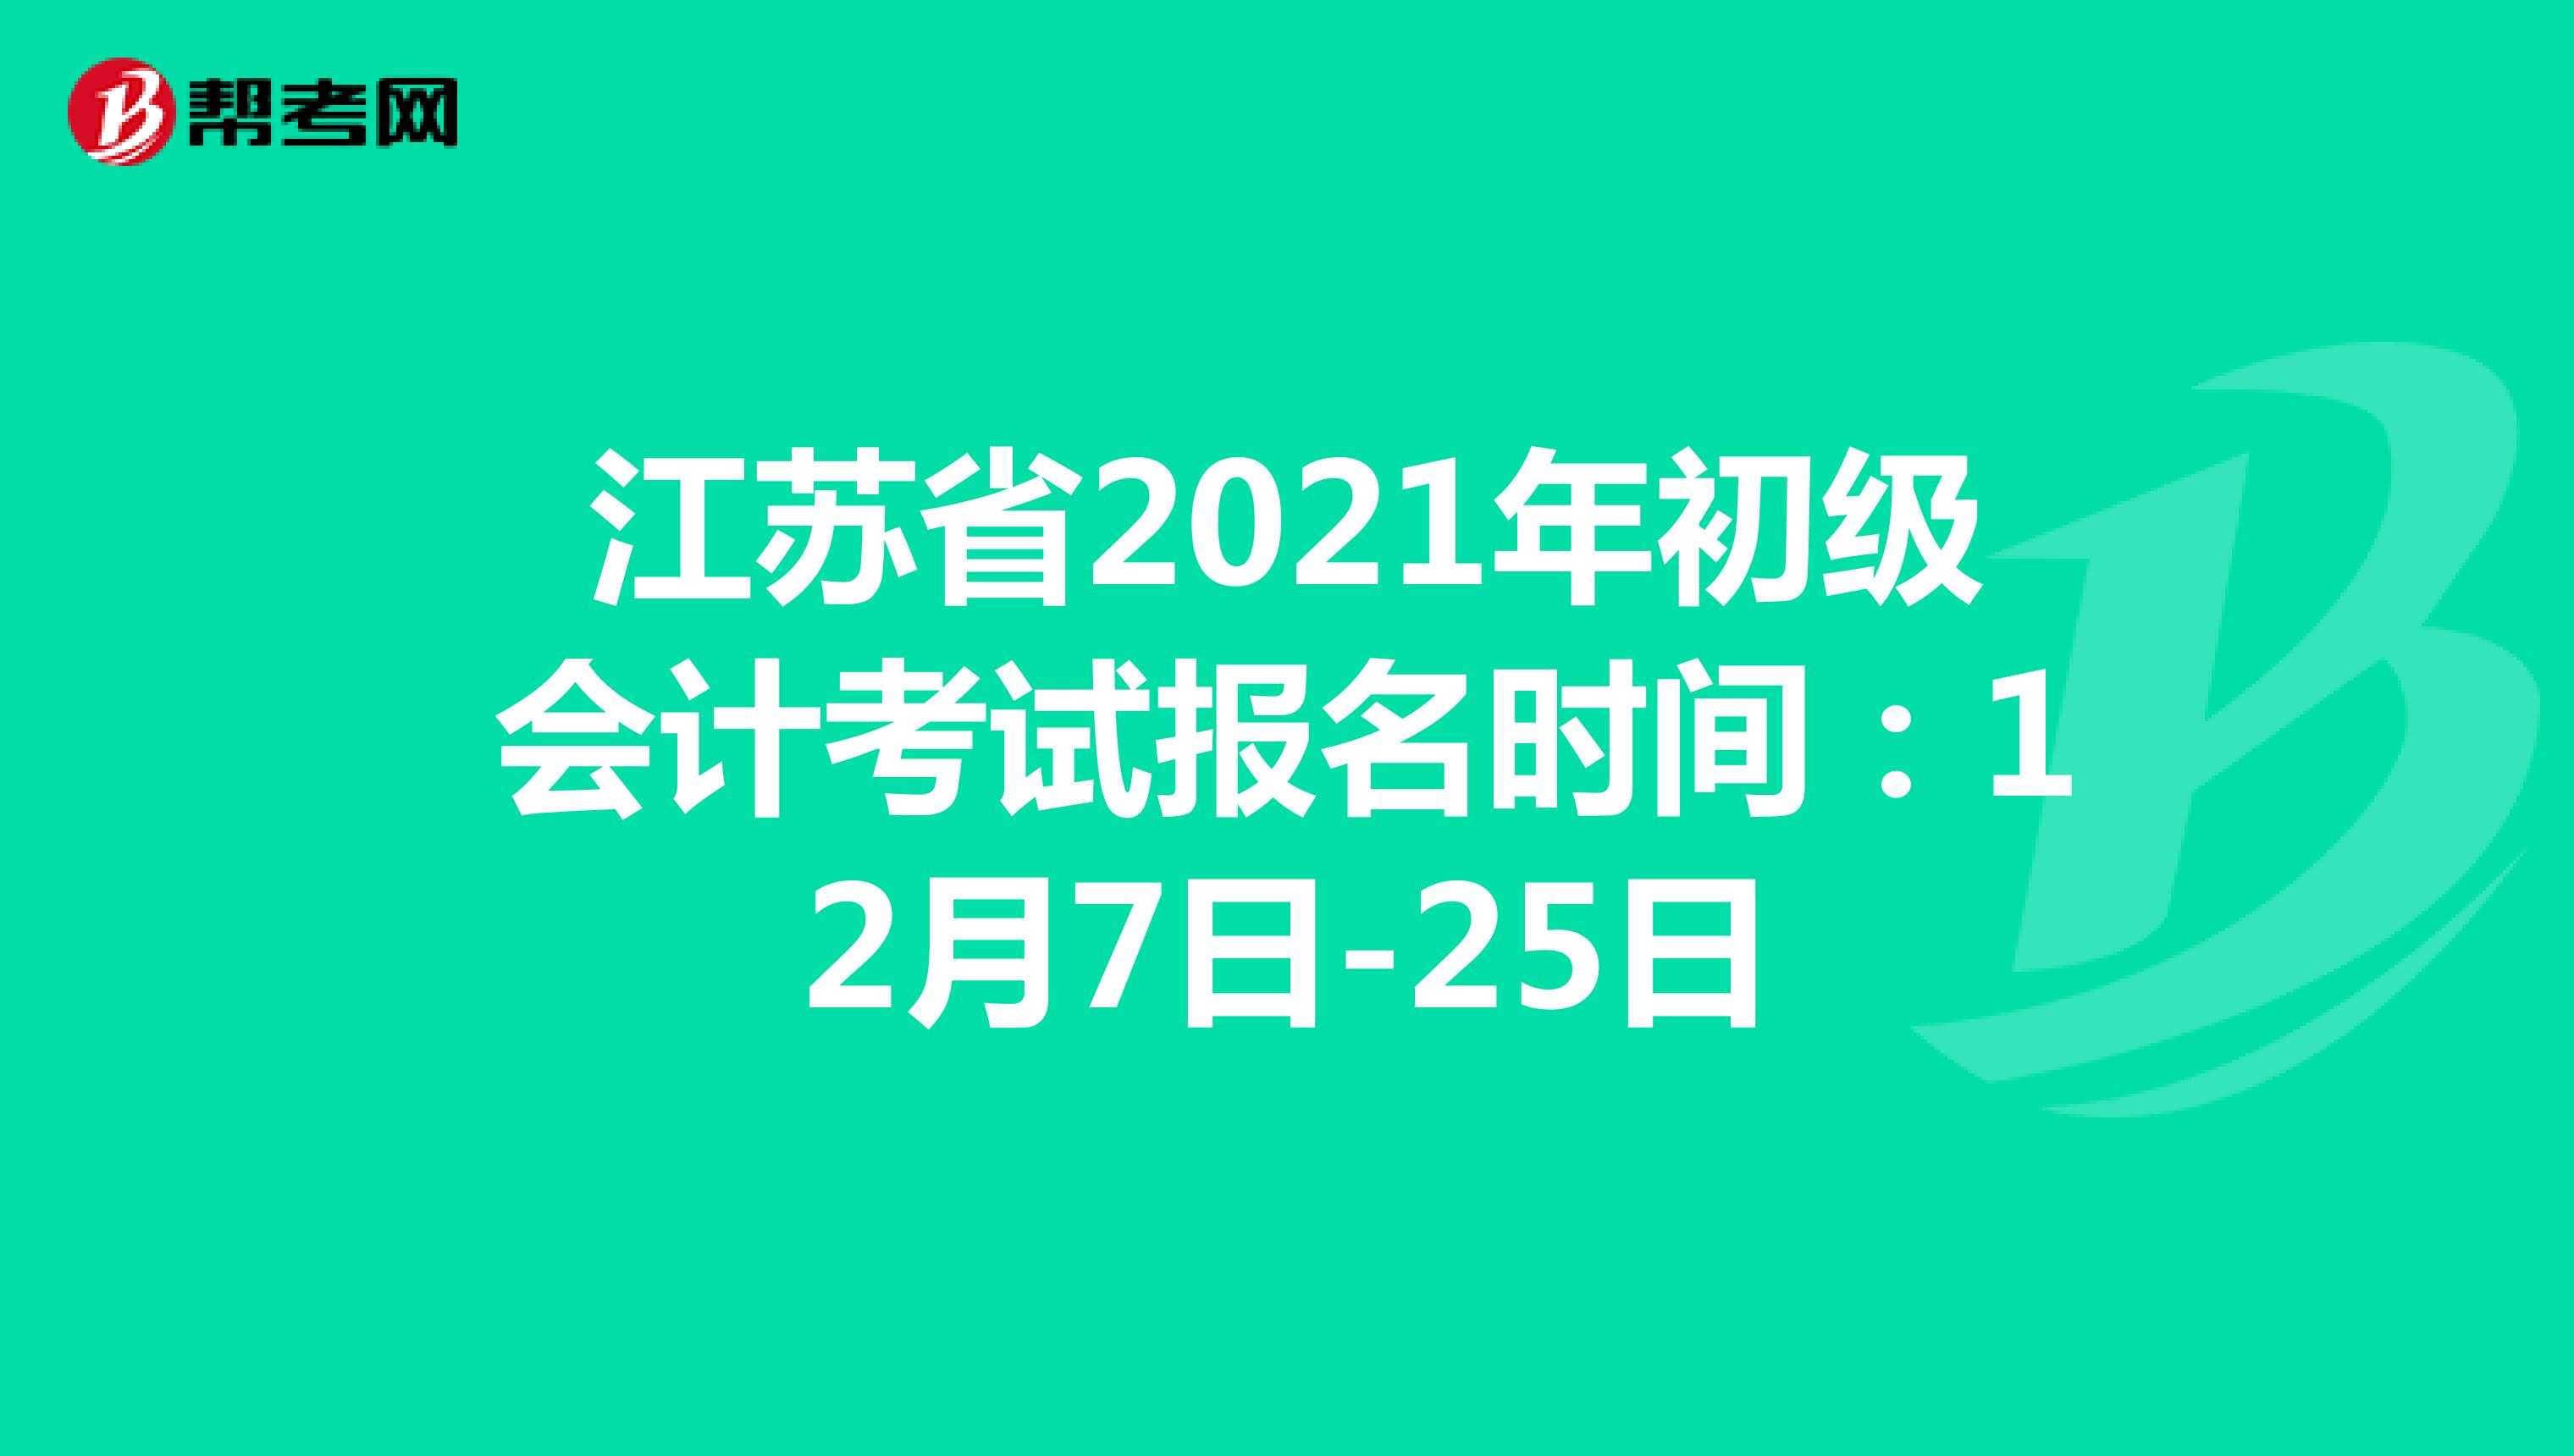 江苏省2021年初级会计考试报名时间：12月7日-25日